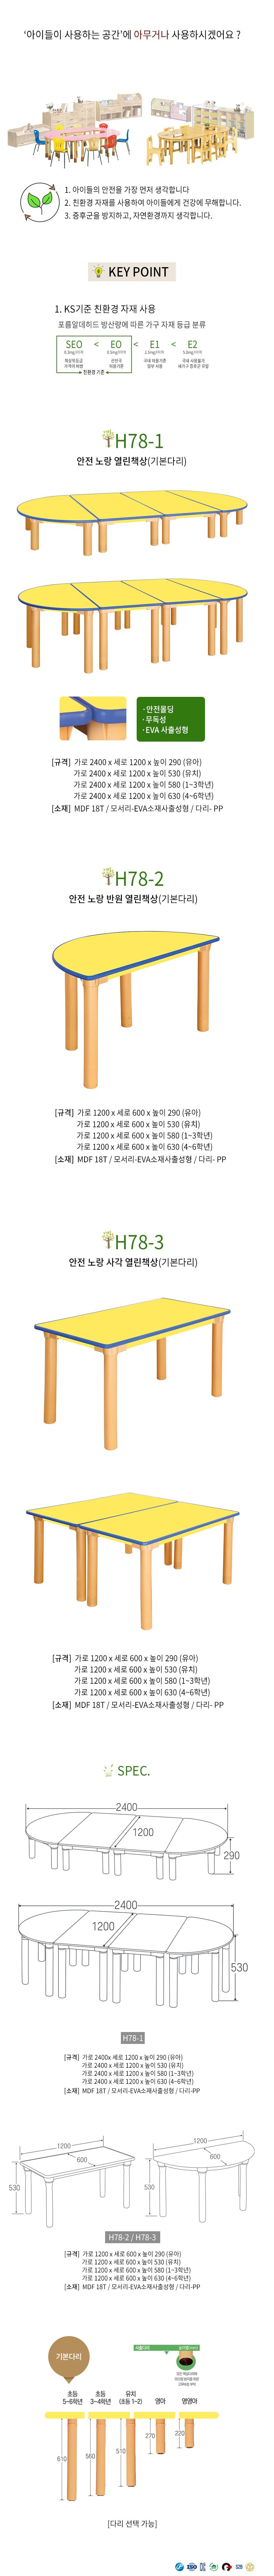 어린이 안전 노랑반원 열린 책상 H530 H78-2 